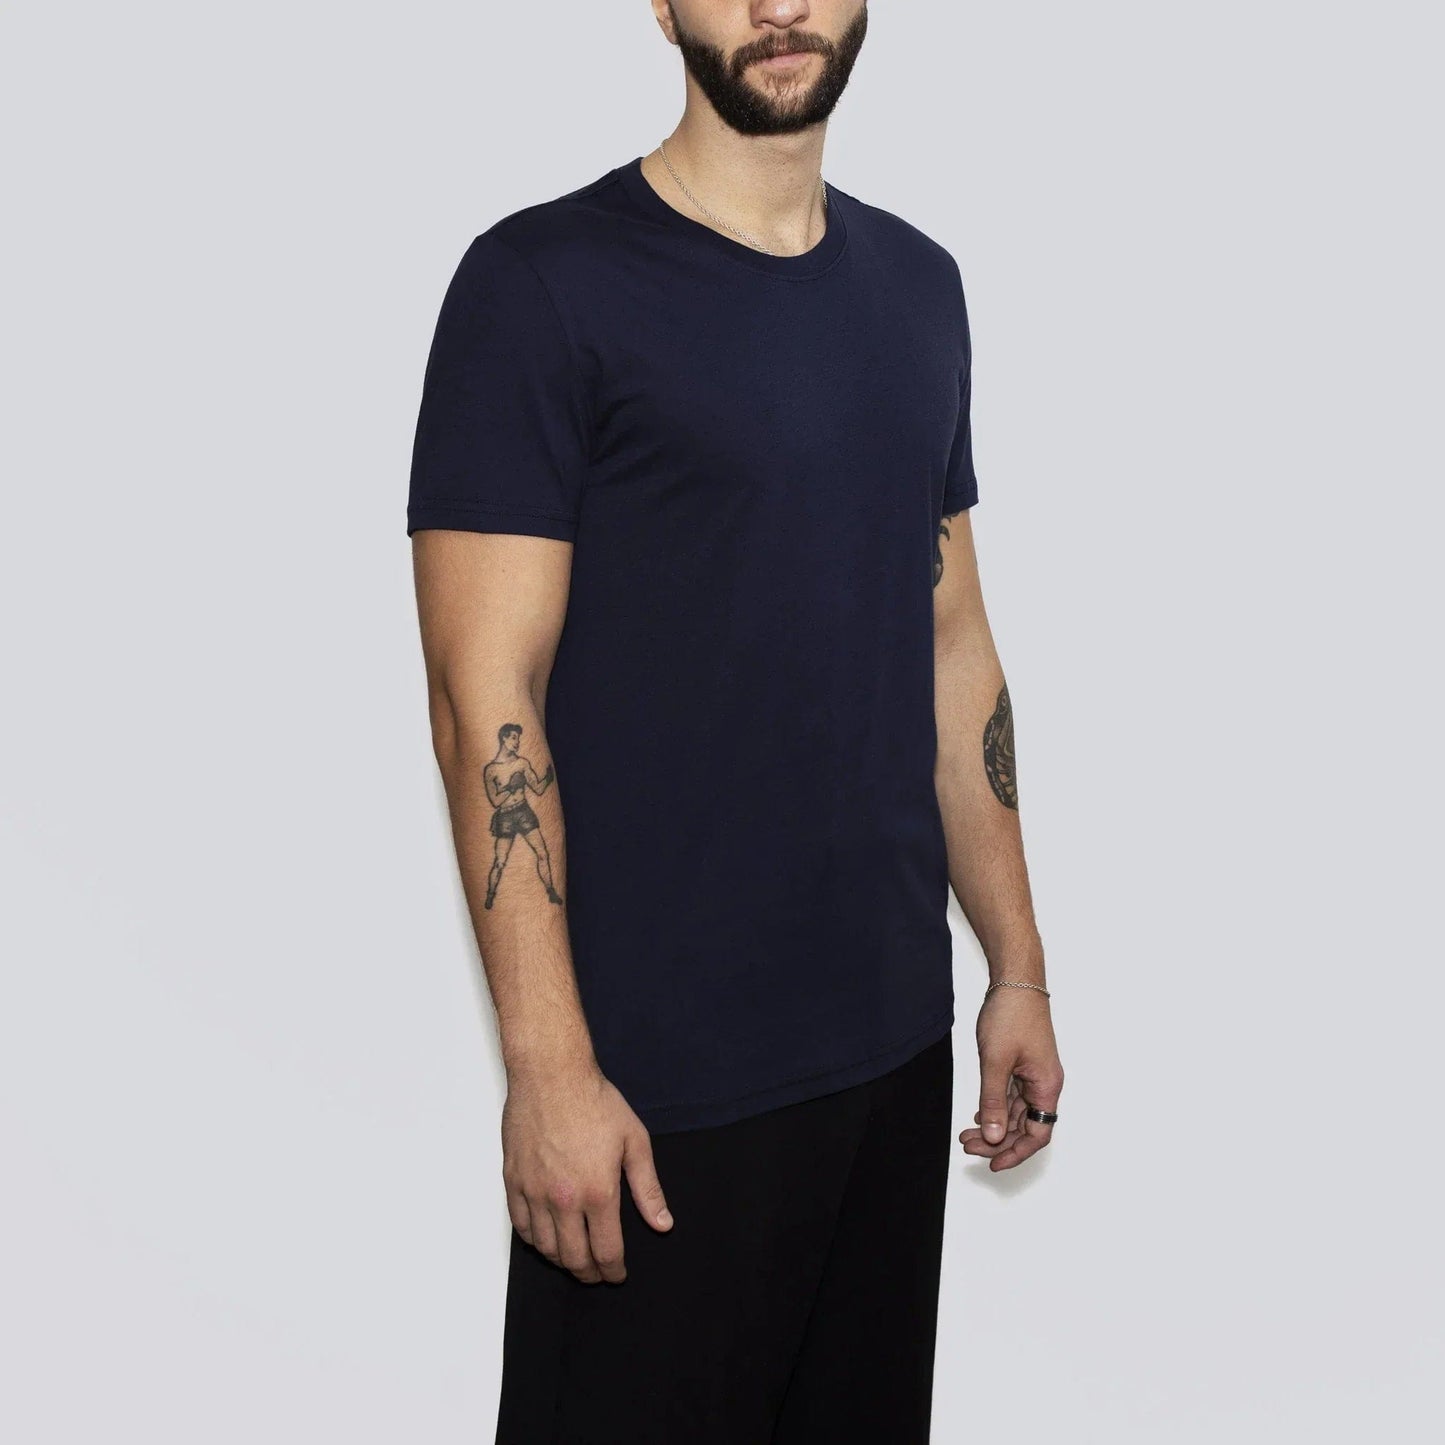 3er-Pack | Herren-T-Shirts, Recycelte Baumwolle, Mitternachtsblau